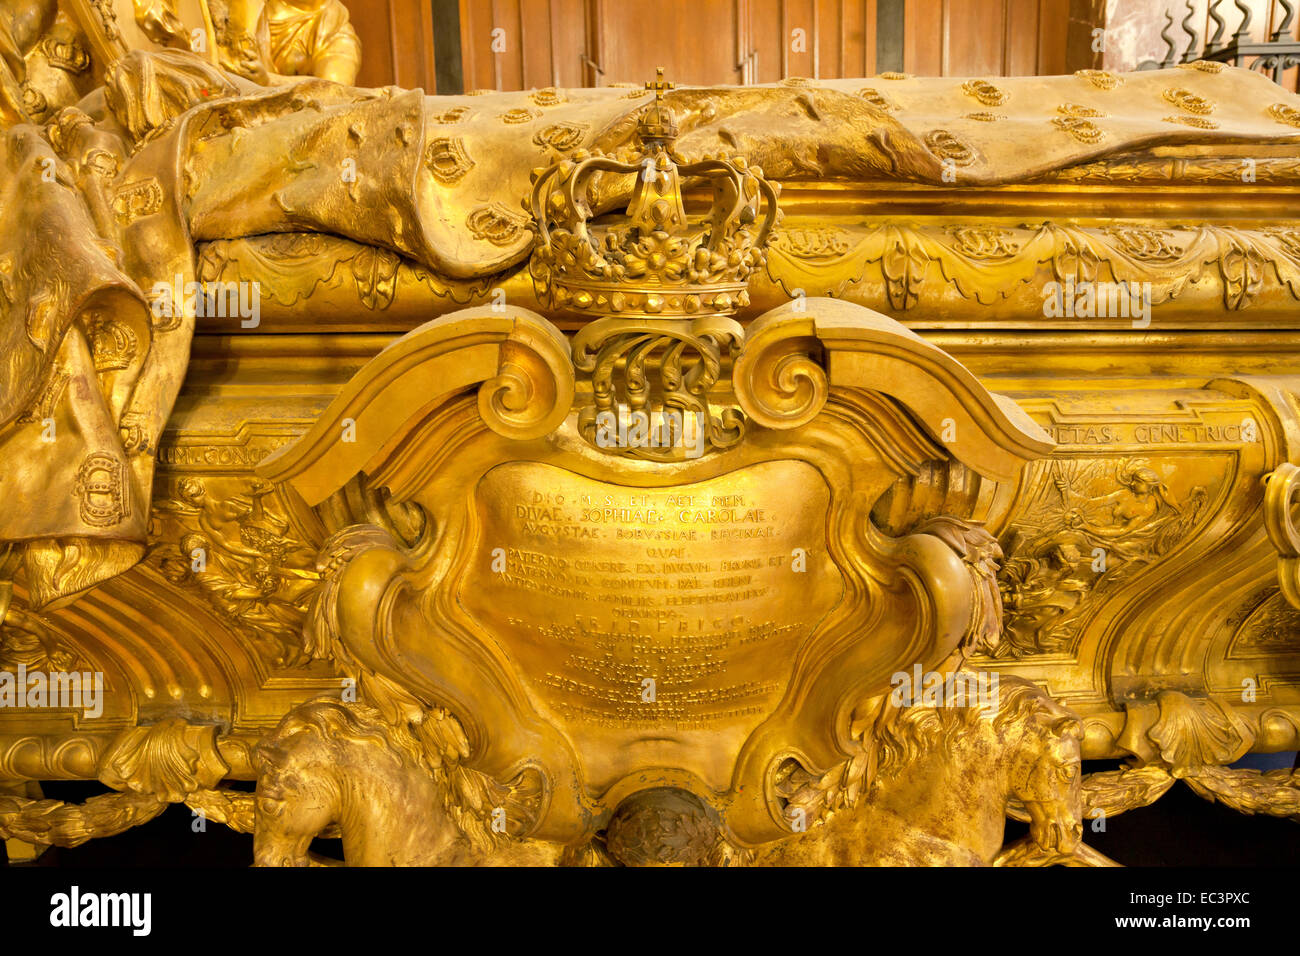 Sarkophag der Hohenzoller-Familie in der Gruft der Hohenzollern, Berliner Dom oder Dom in Berlin, Deutschland, Europa Stockfoto